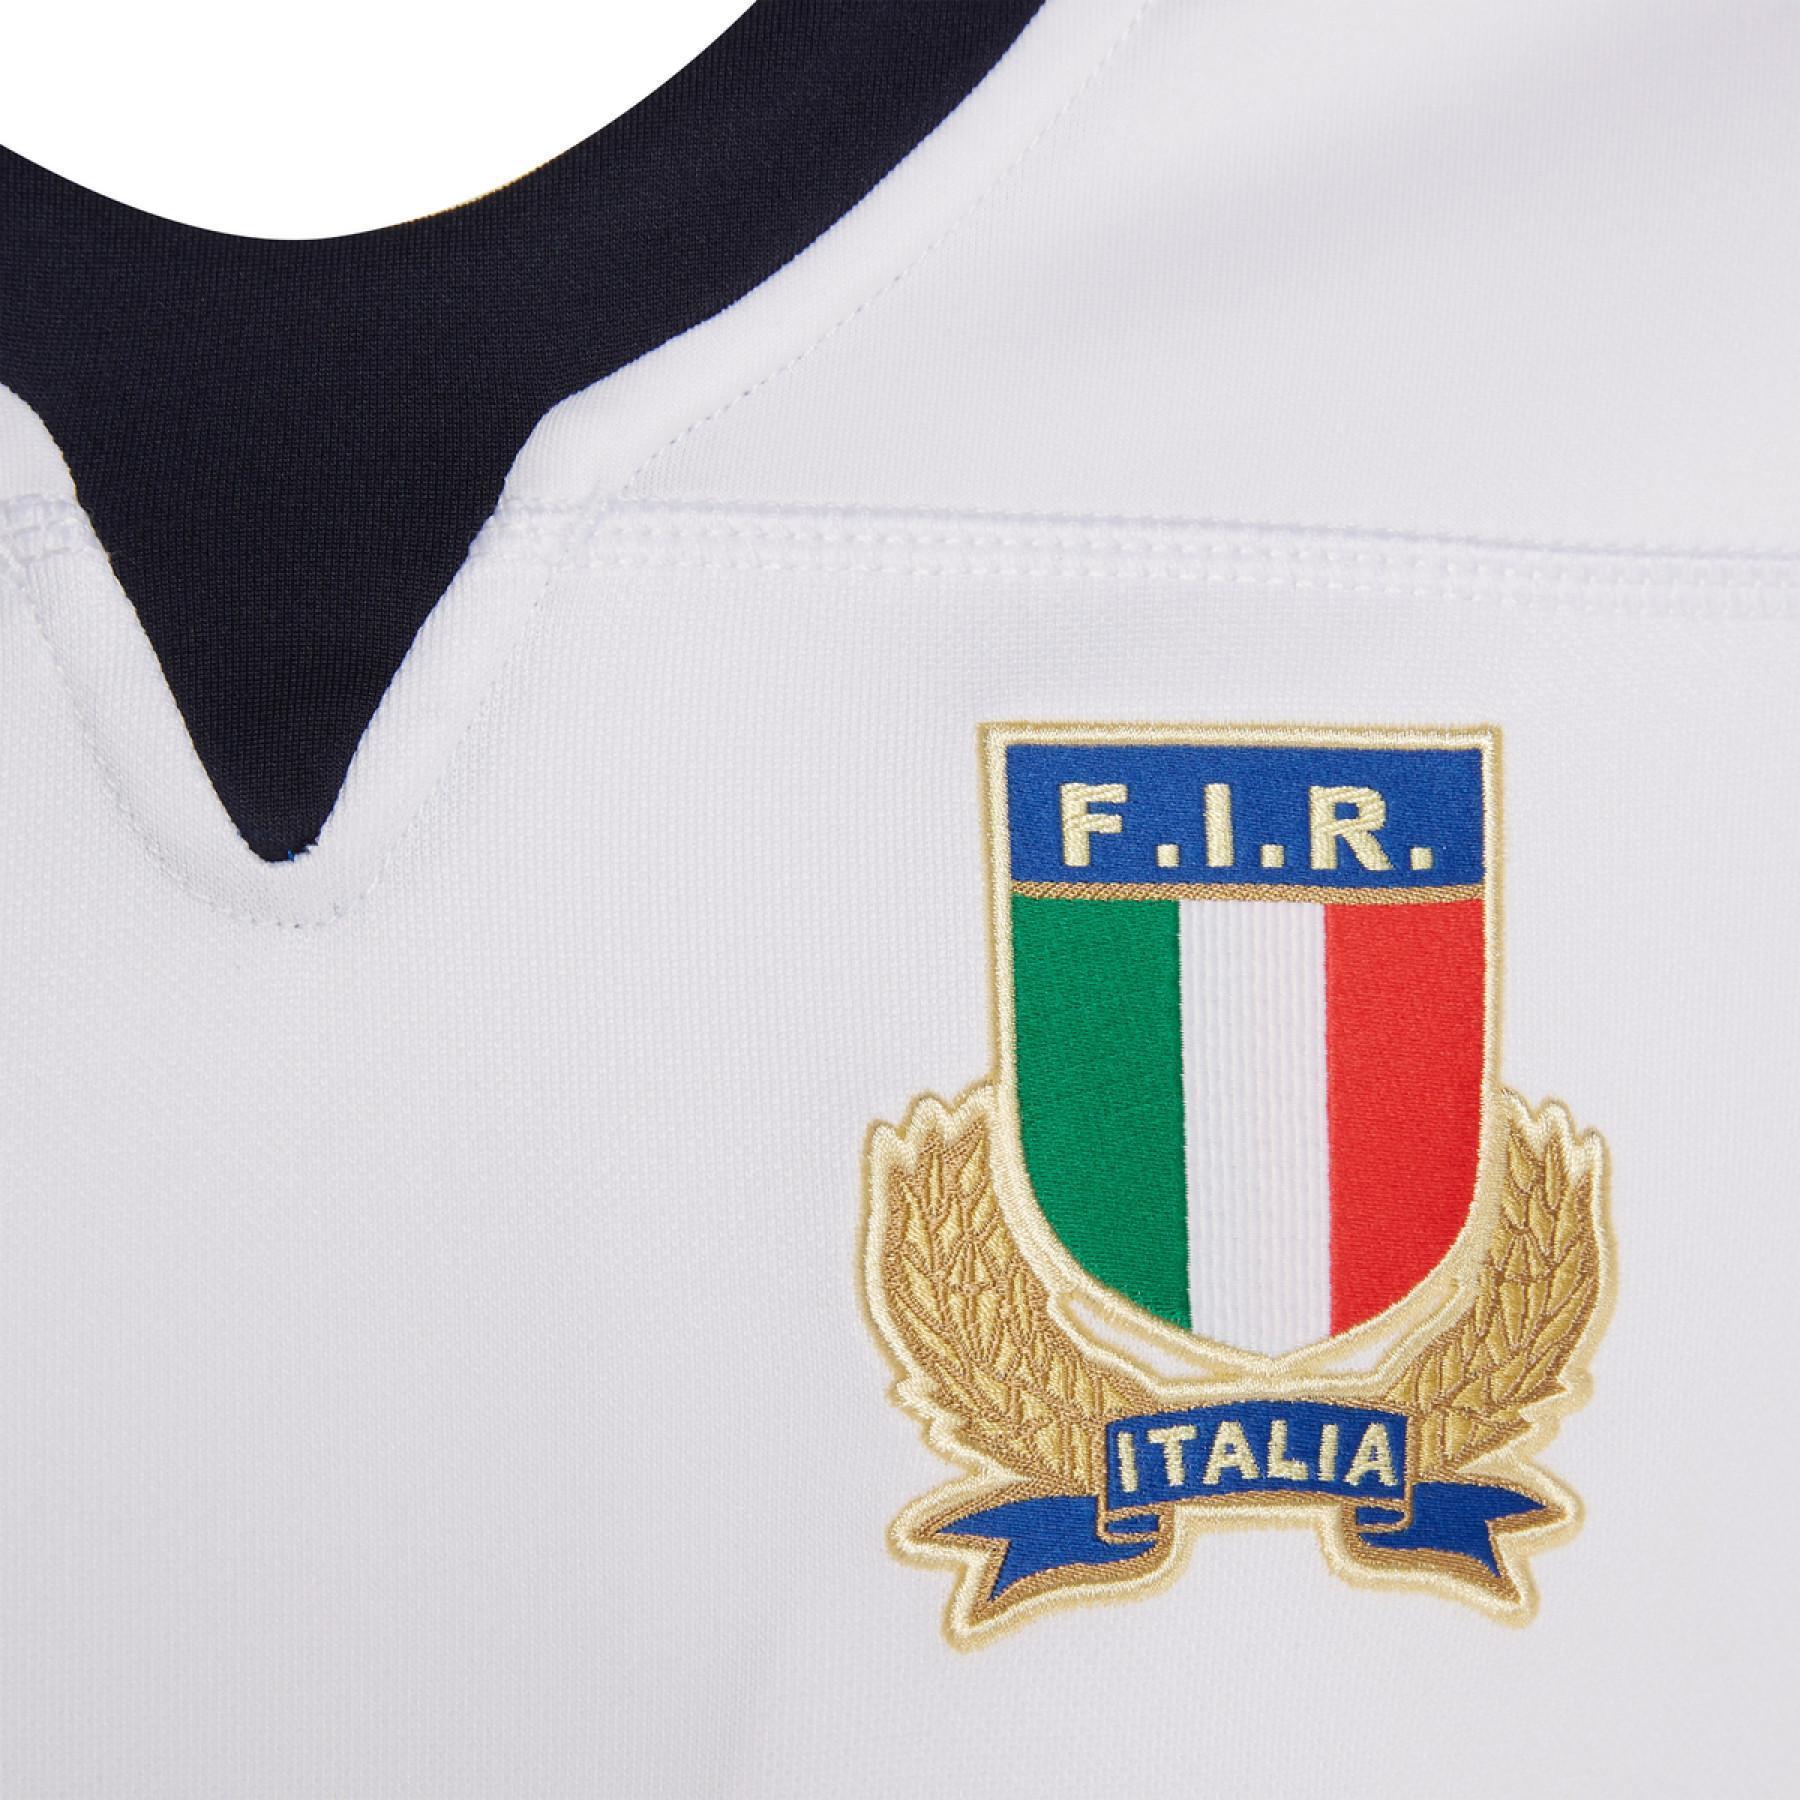 Dom dziecka jersey Italie rugby 2019